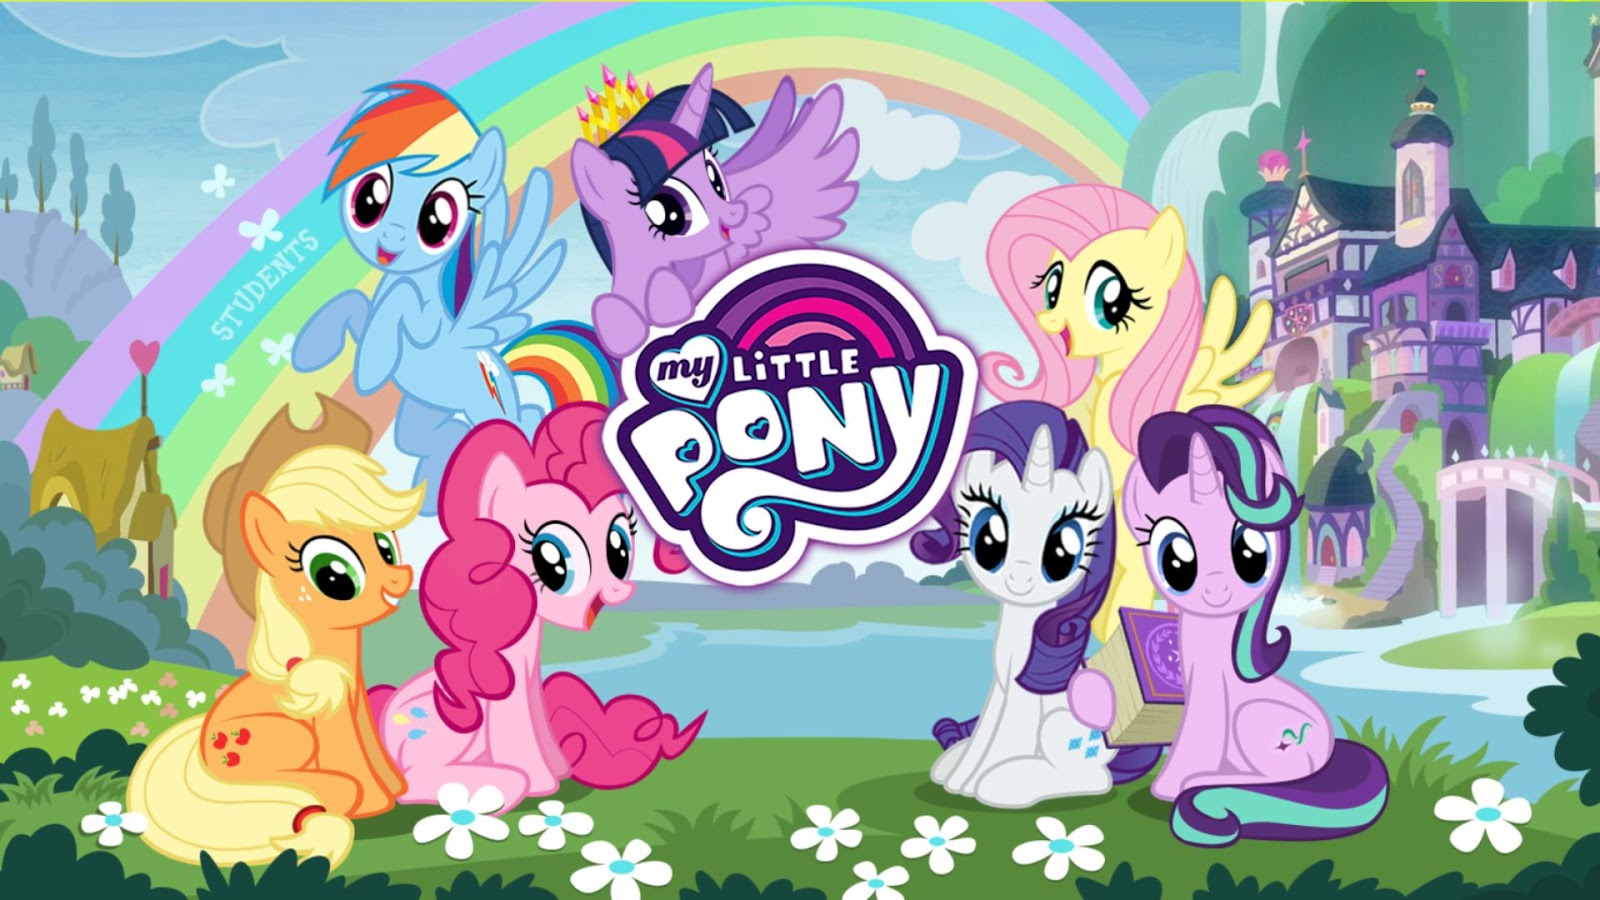 Скачай игру my little pony. My little Pony магия принцесс игра. My little Pony магия принцесс Gameloft. My little Pony магия принцесс Понивилль. My little Pony School игра.